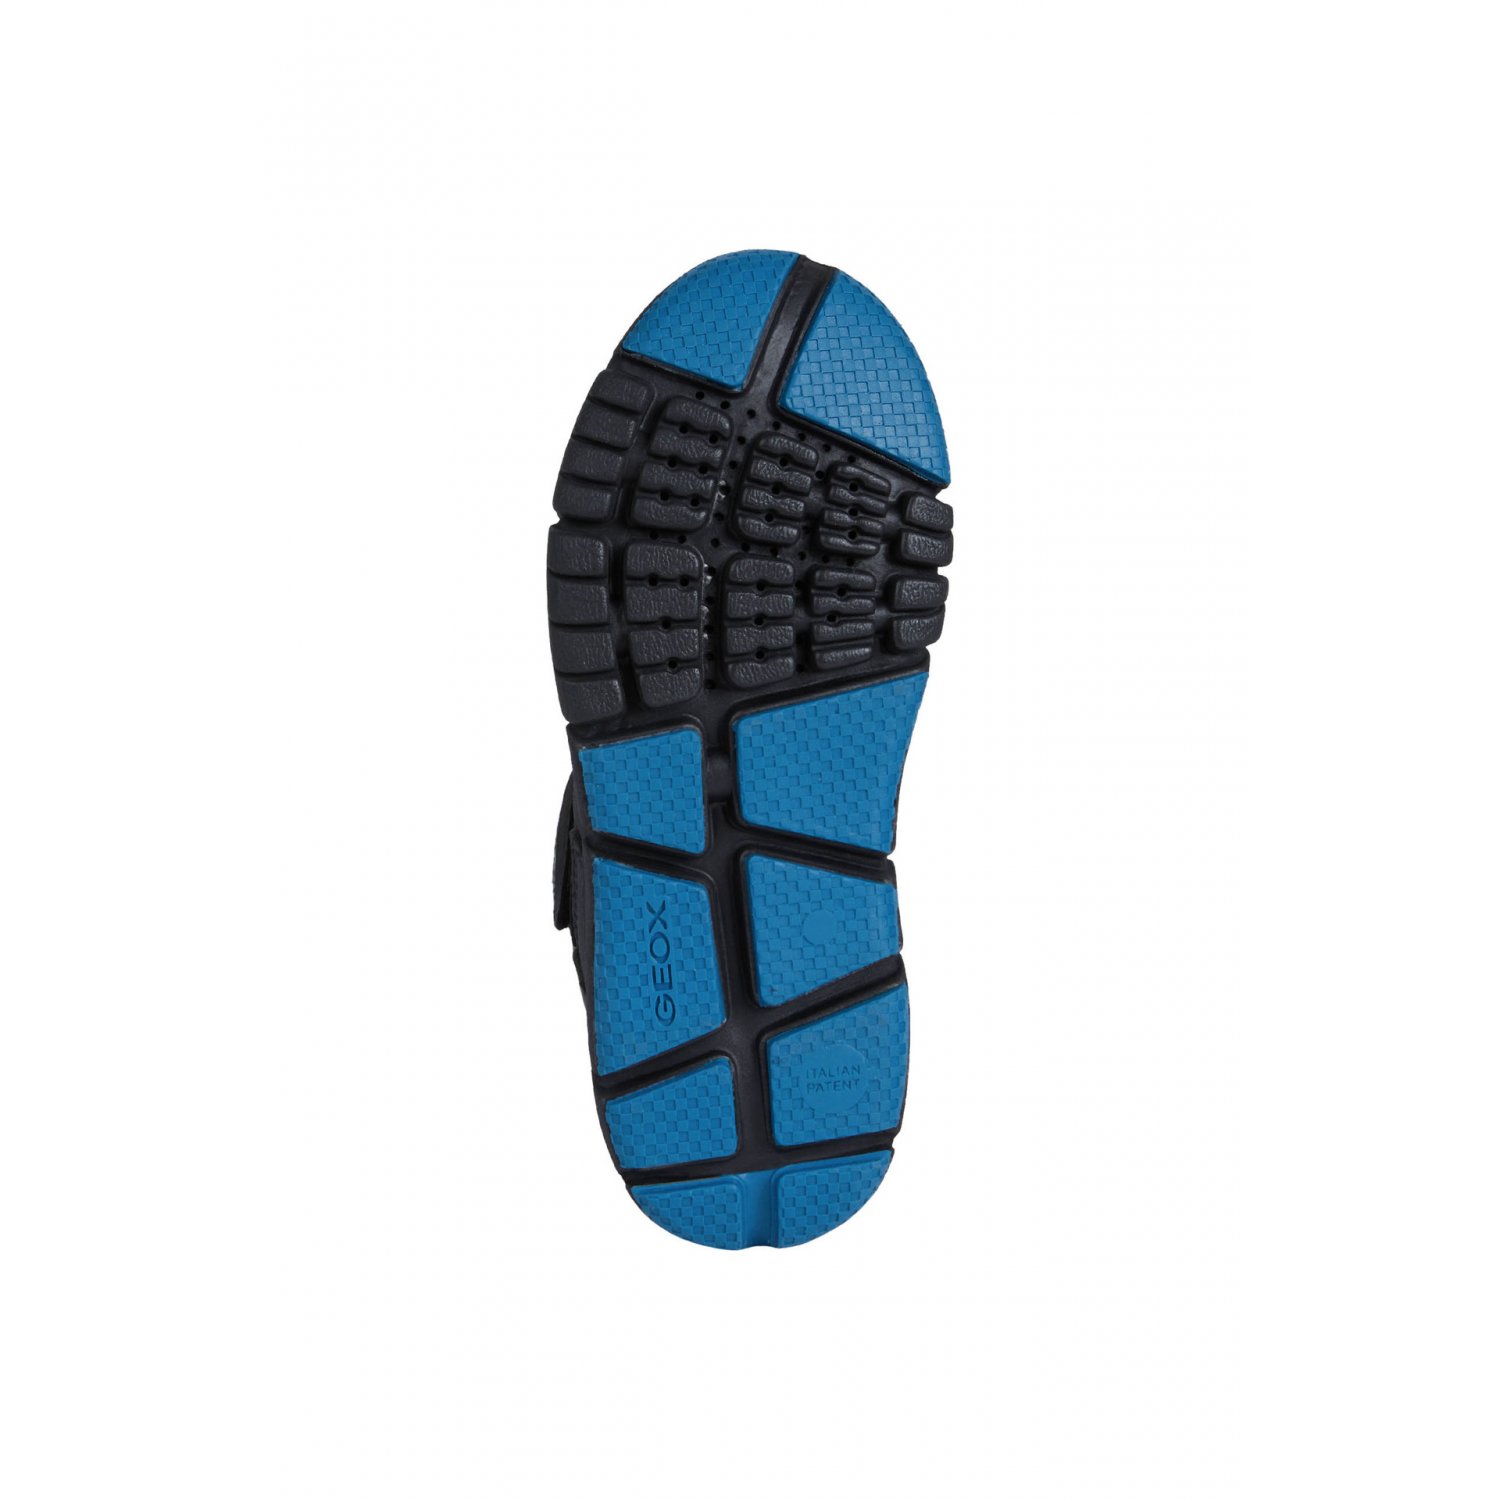 Ботинки Flexyper (черный с синим) Geox 032ME для мальчиков: купить Москве ботинки демисезон Geox